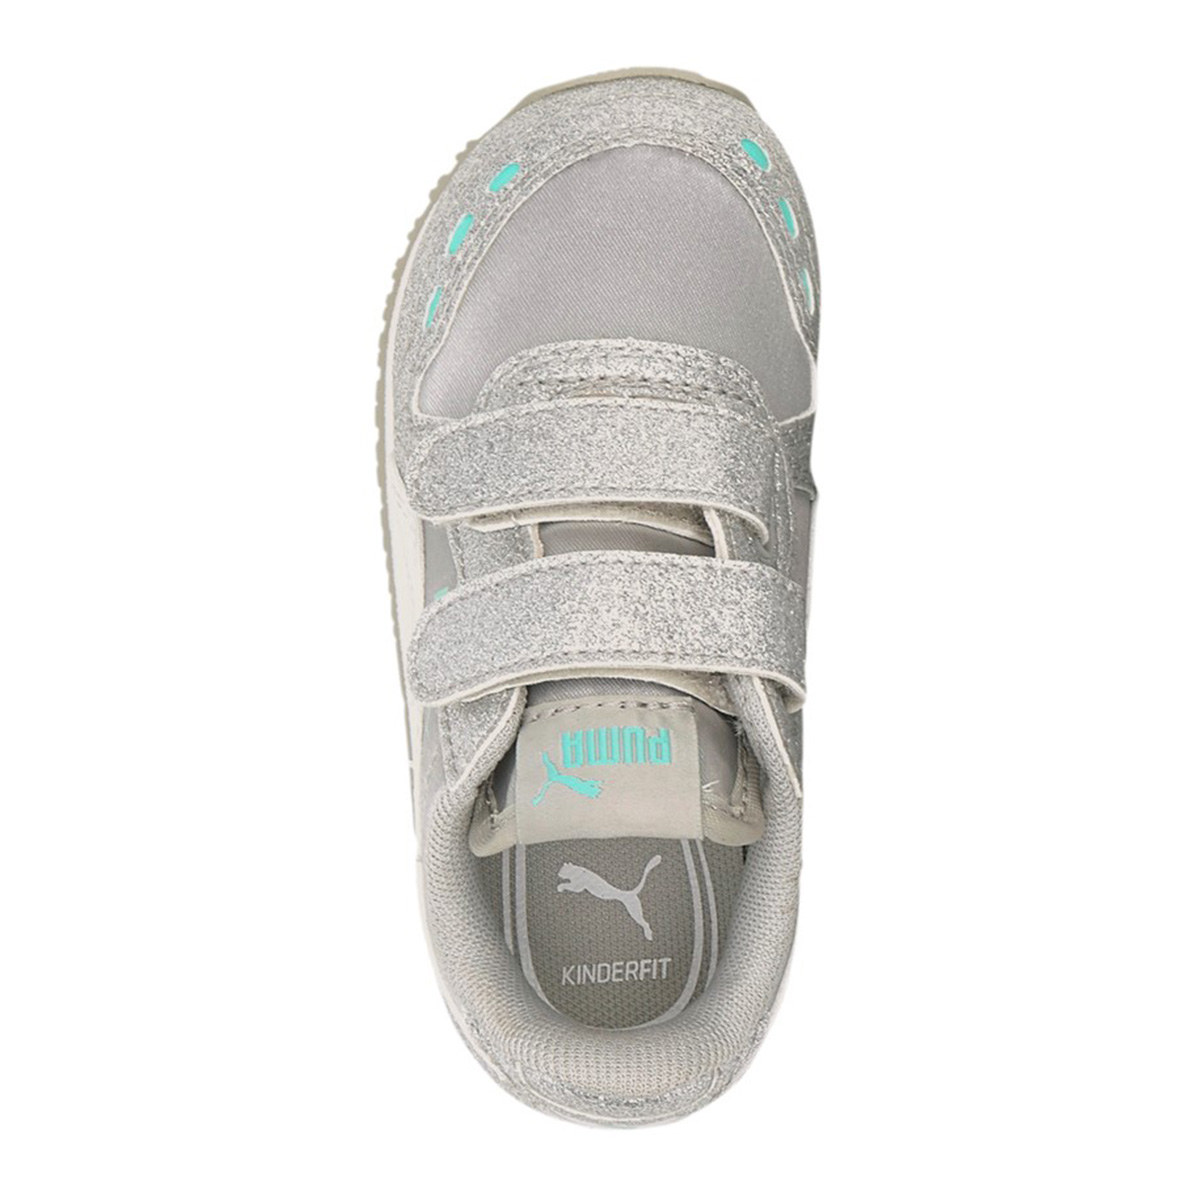 PUMA Cabana Racer Glitz V PS Inf Sneaker Schuhe Baby Mädchen Silber / Weiß 370986 